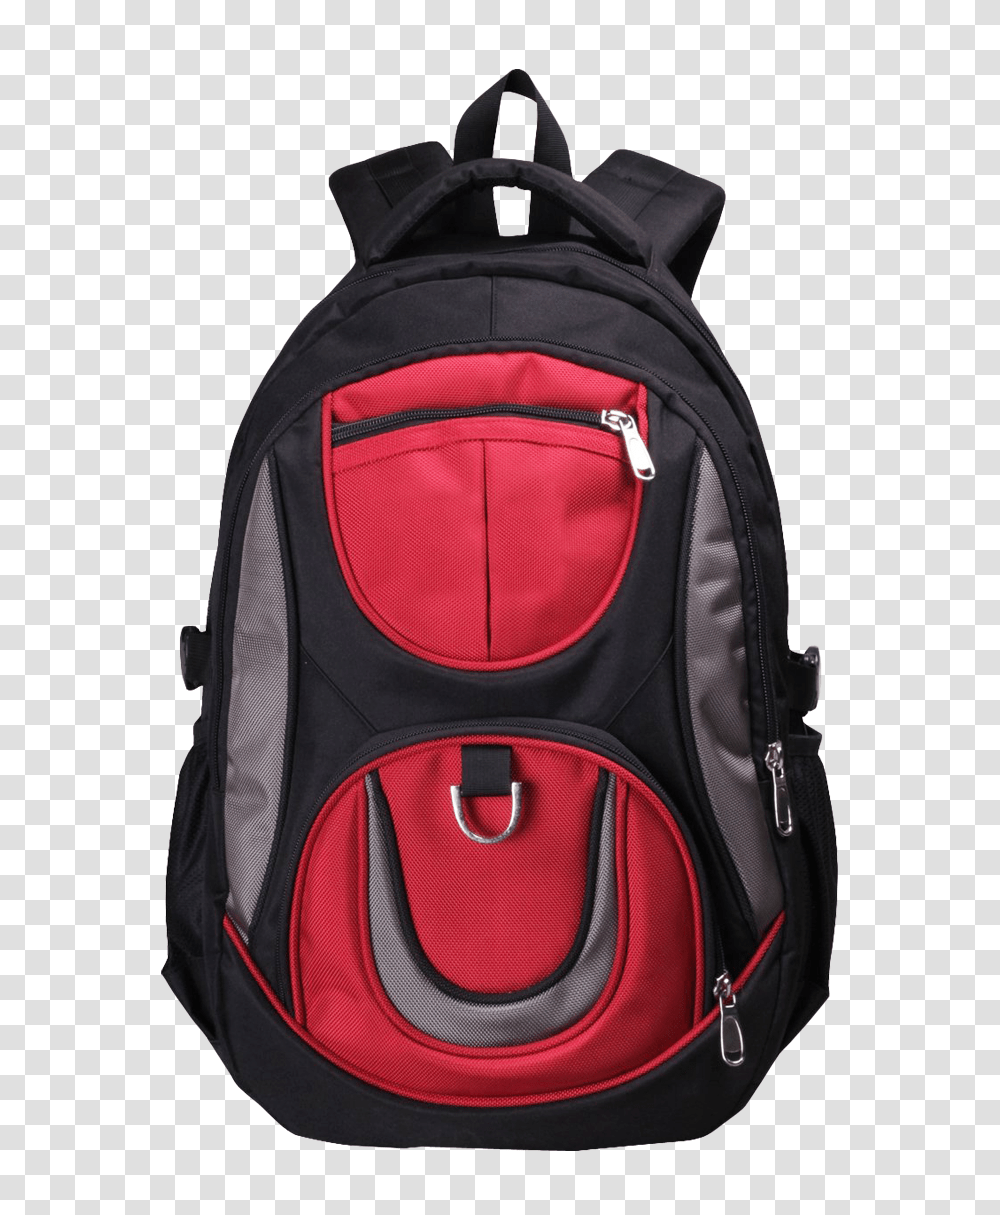 School Bag Image, Backpack Transparent Png